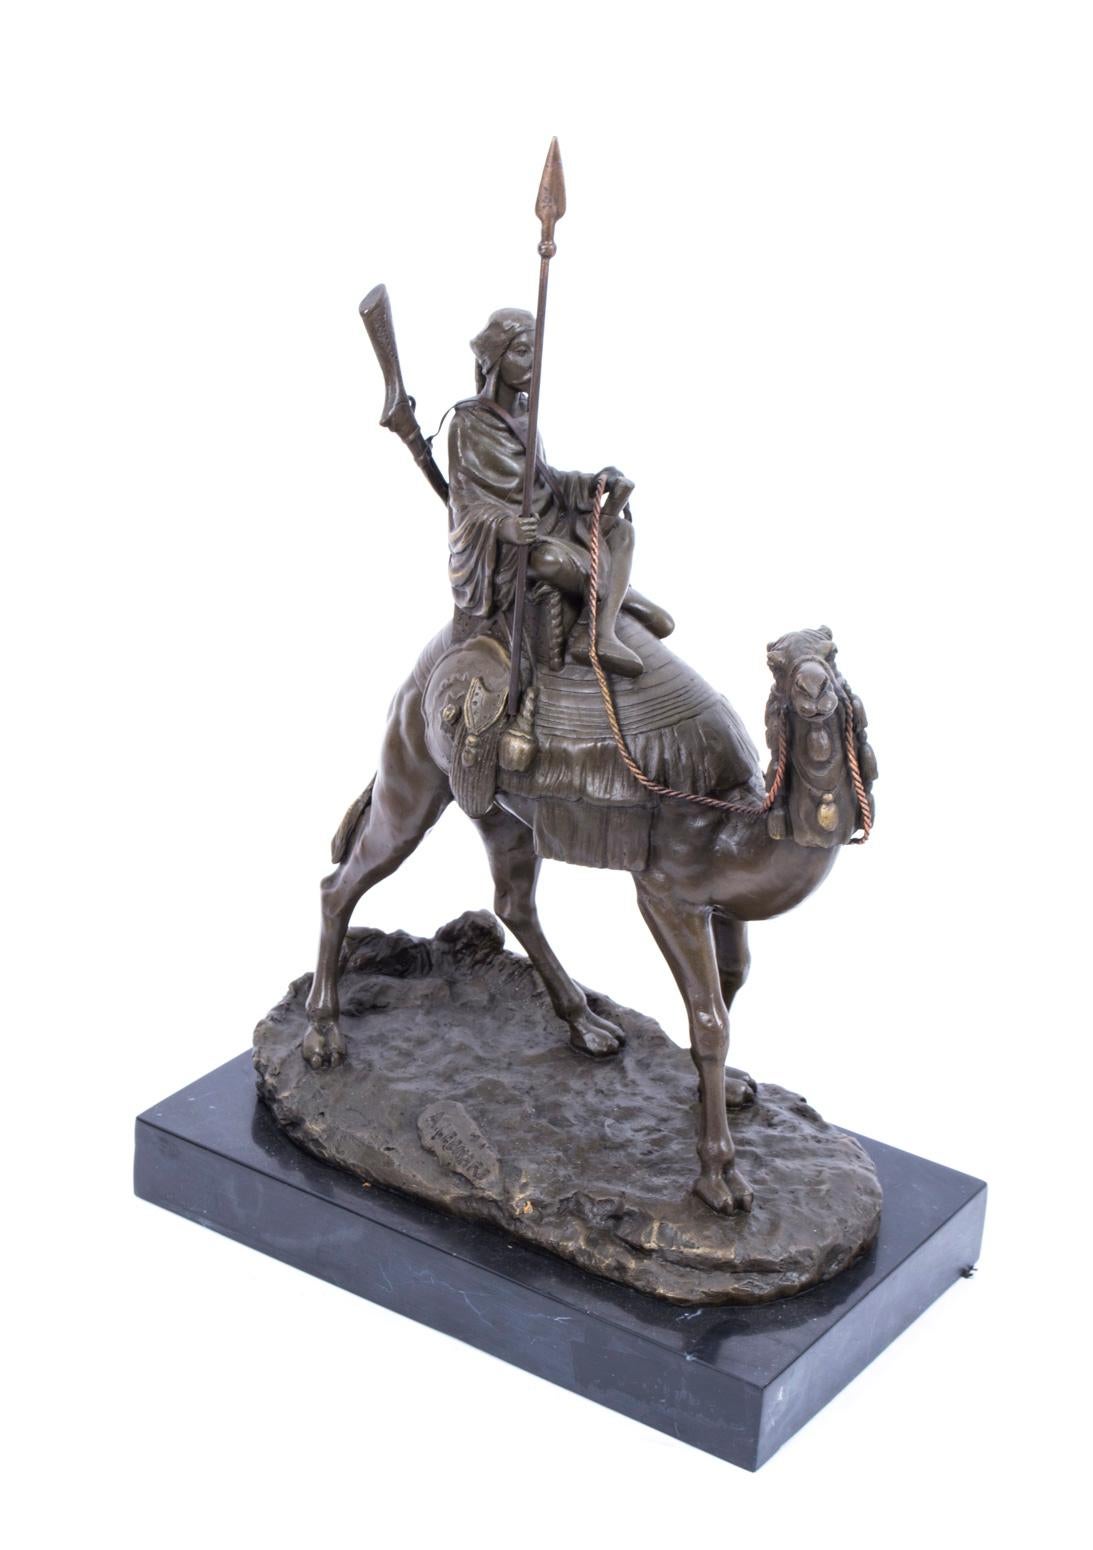 Es handelt sich um die Bronzeskulptur eines Beduinenkriegers mit Speer und Gewehr, der auf seinem Wüstenschiff reitet, aus dem späten 20. Jahrhundert.
Diese hochwertige, massive Bronze wurde im traditionellen Wachsausschmelzverfahren hergestellt,